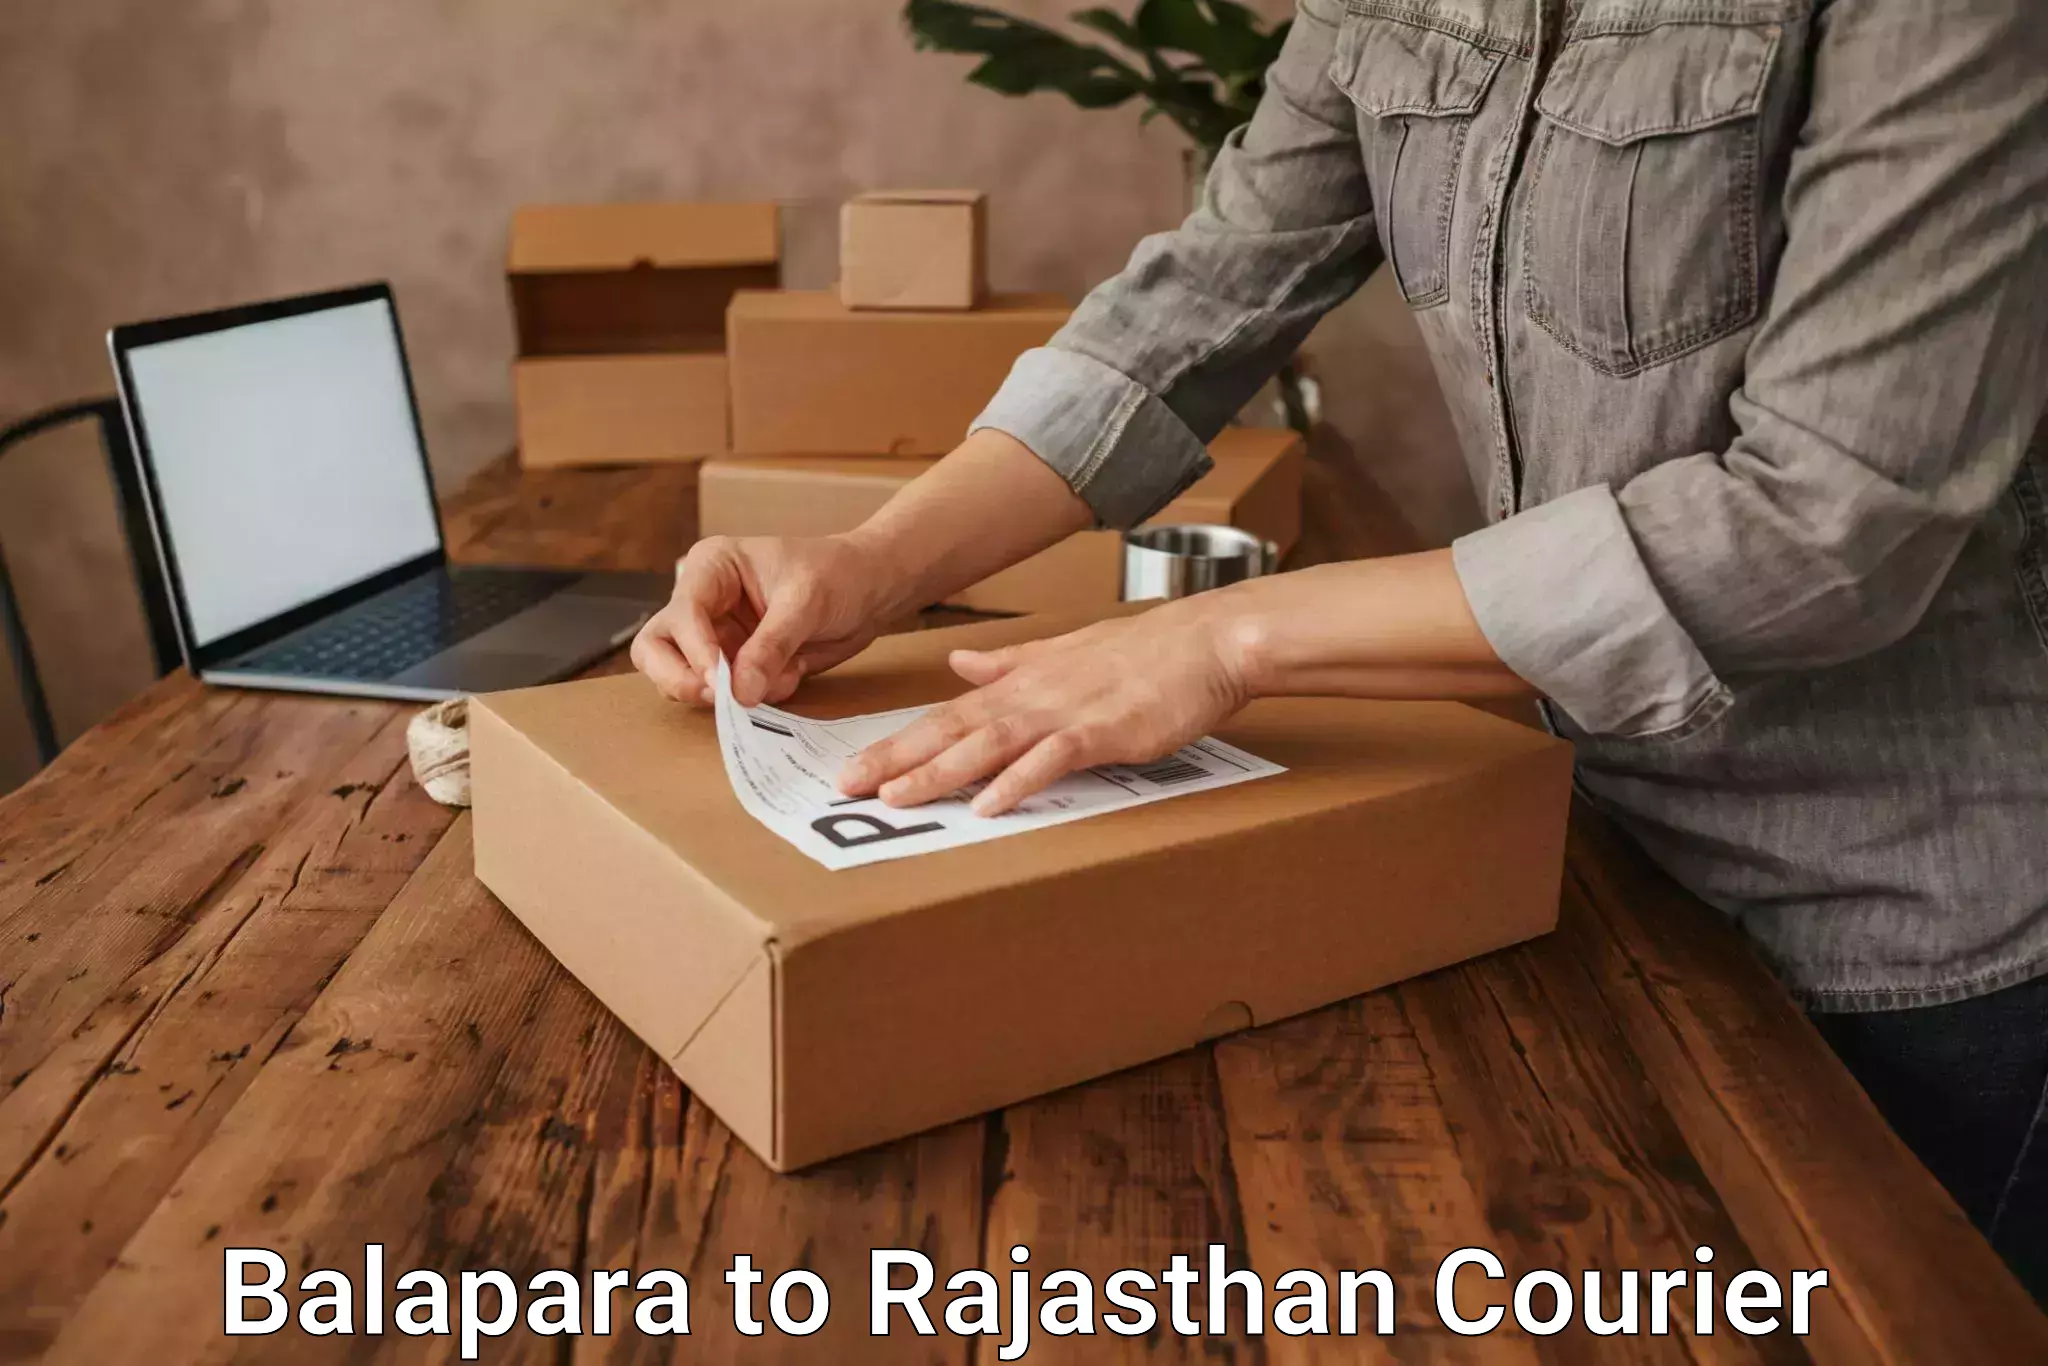 Courier app Balapara to Rajasthan